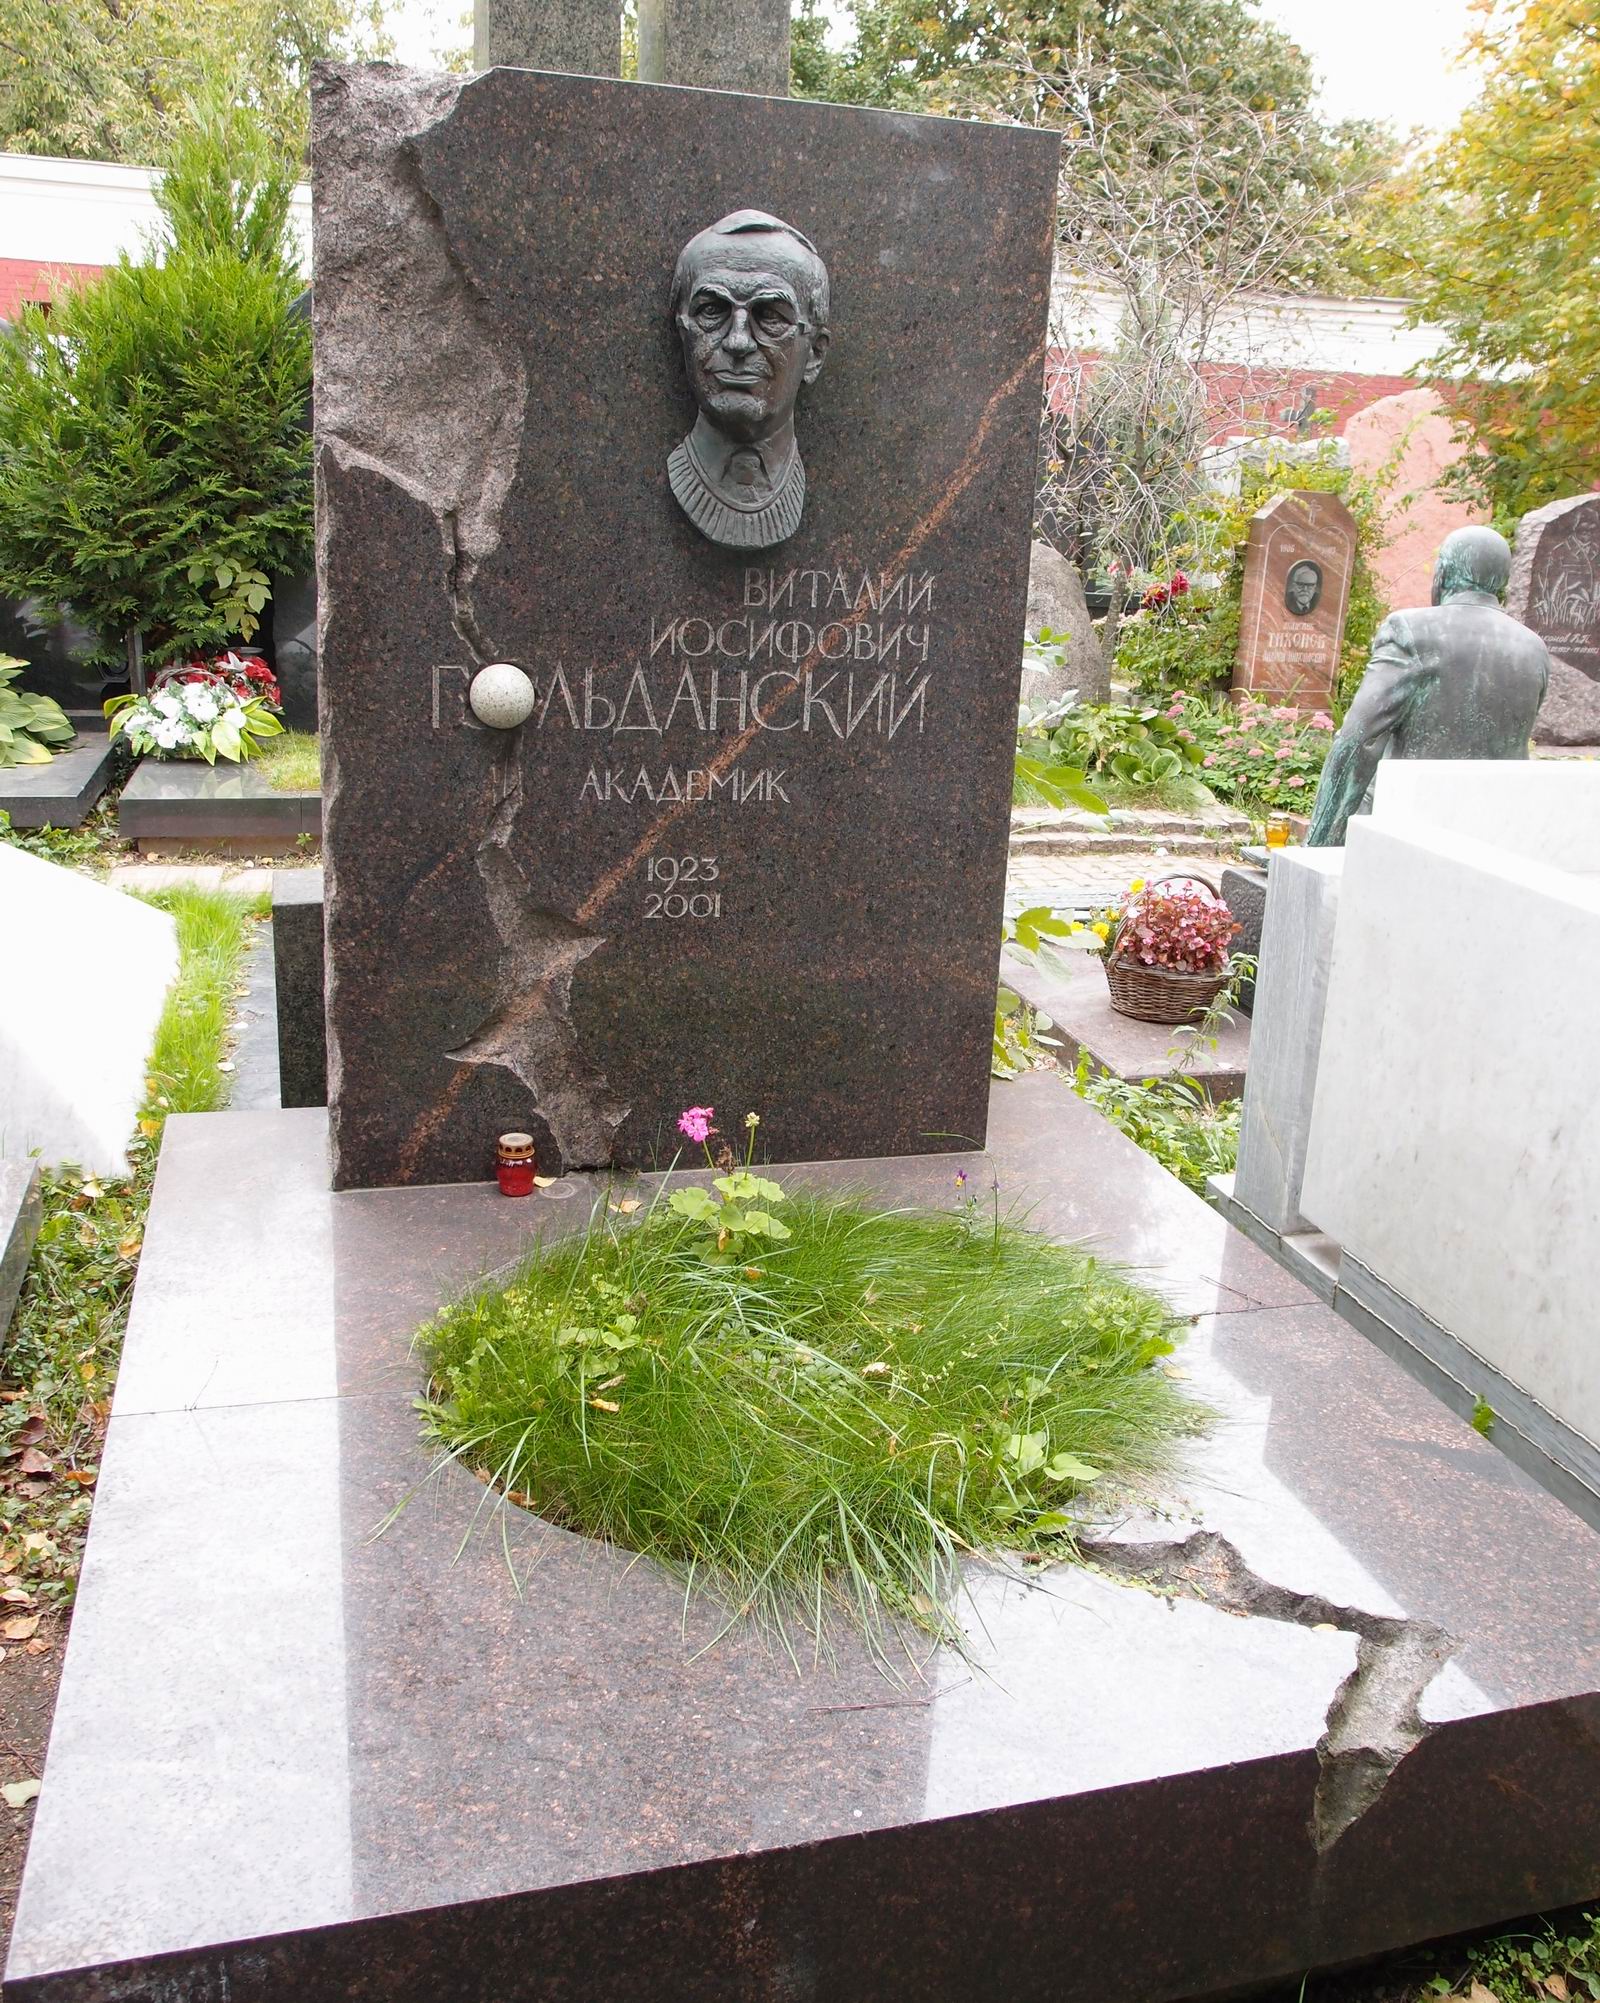 Памятник на могиле Гольданского В.И. (1923–2001), на Новодевичьем кладбище (10–5–19). Нажмите левую кнопку мыши чтобы увидеть фрагмент памятника.